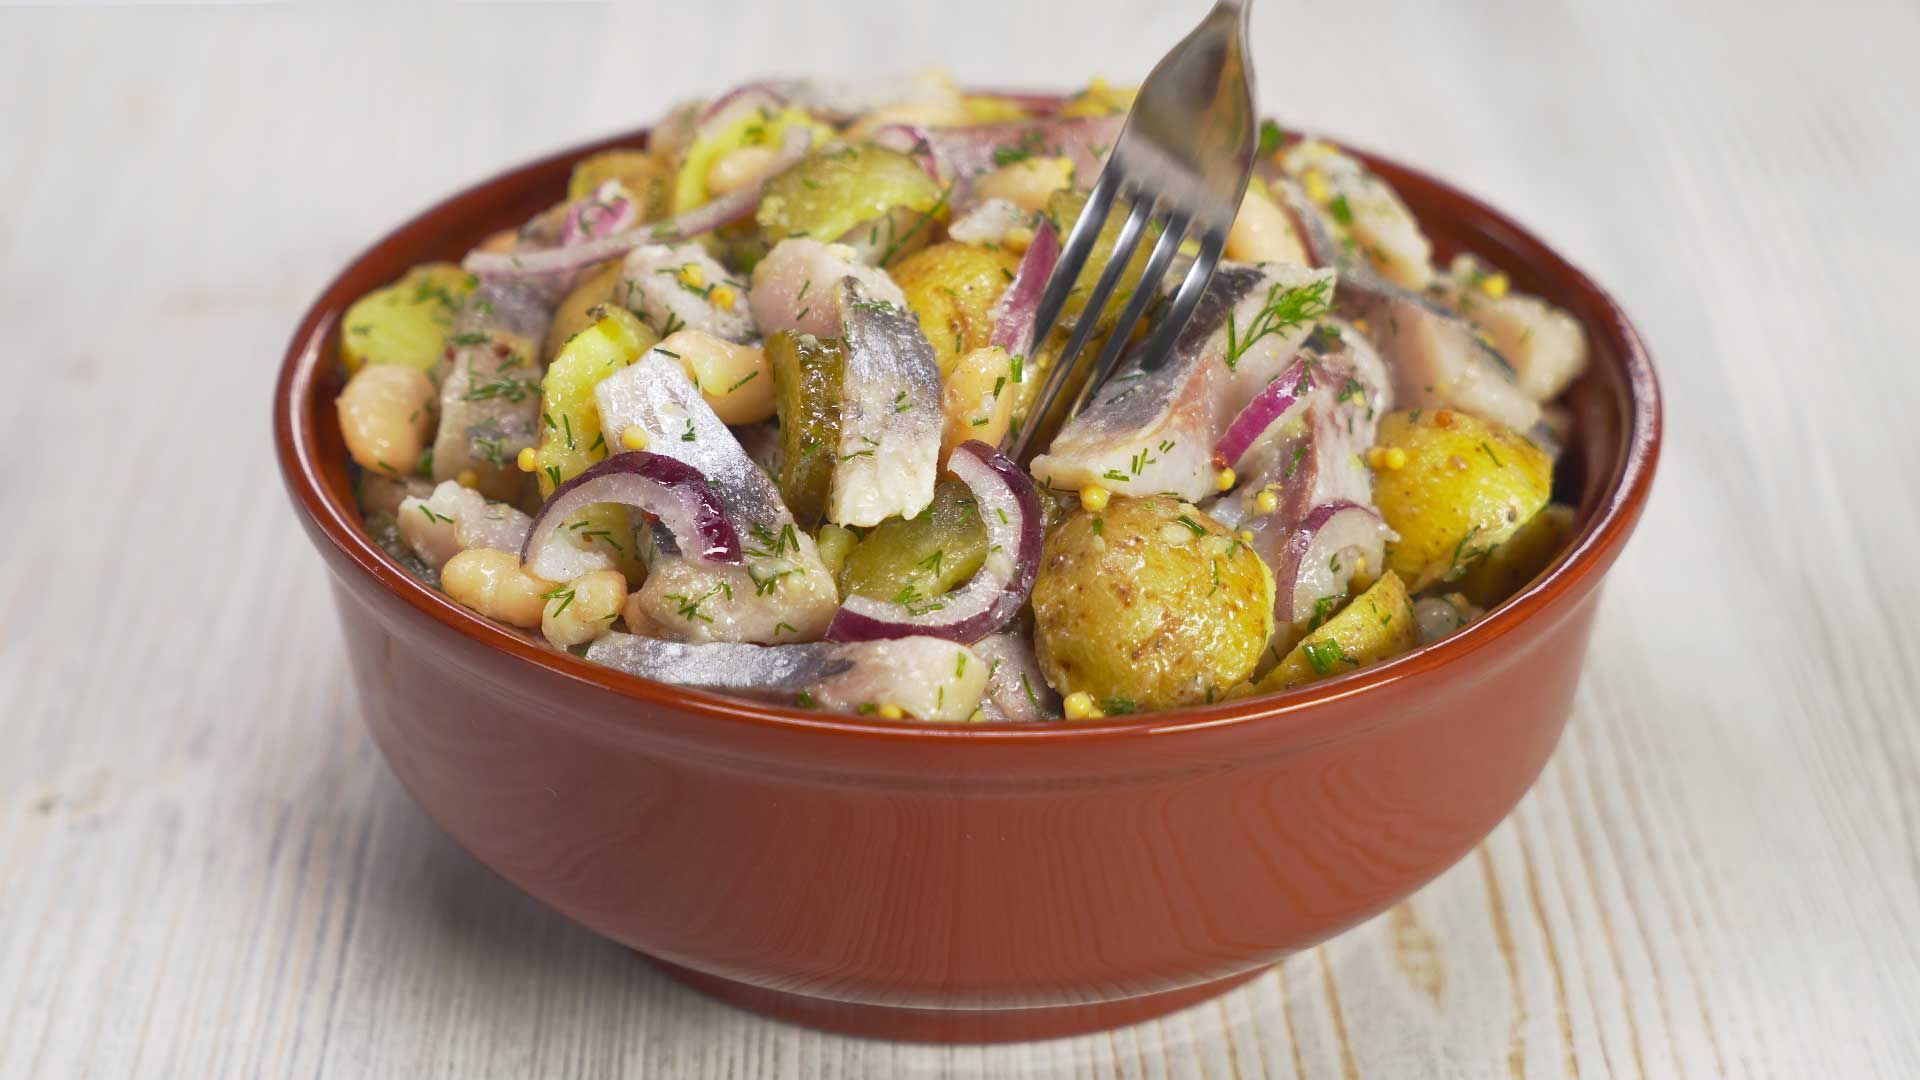 Салат картошка с селедкой и луком пошаговый рецепт с фото пошагово